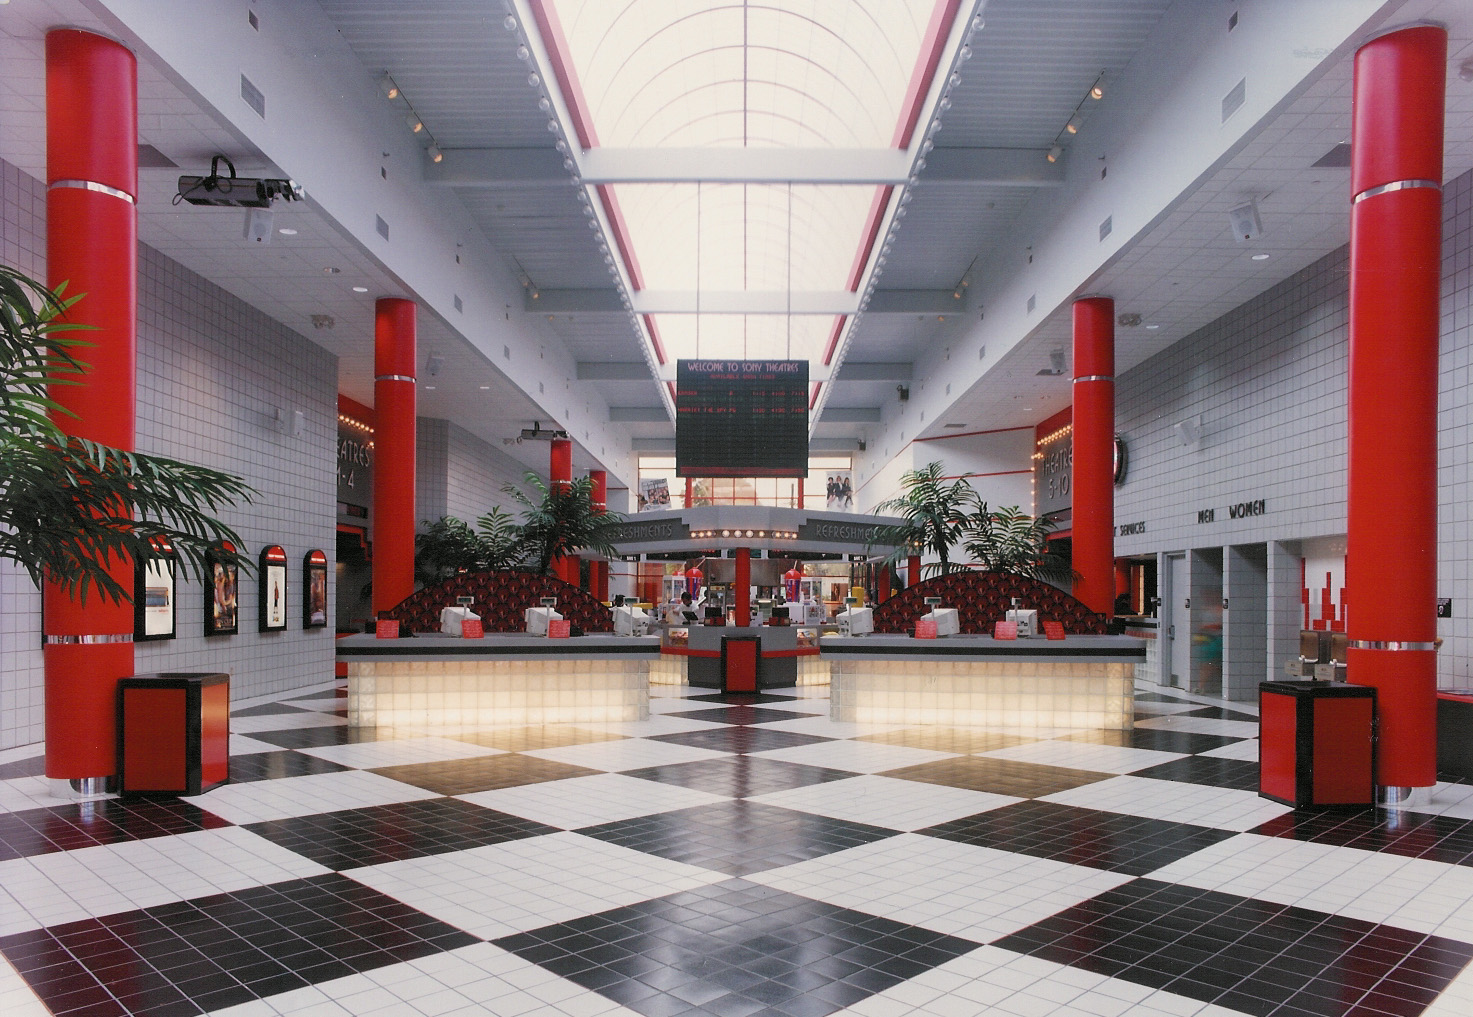 Interior Main Lobby and Box Office